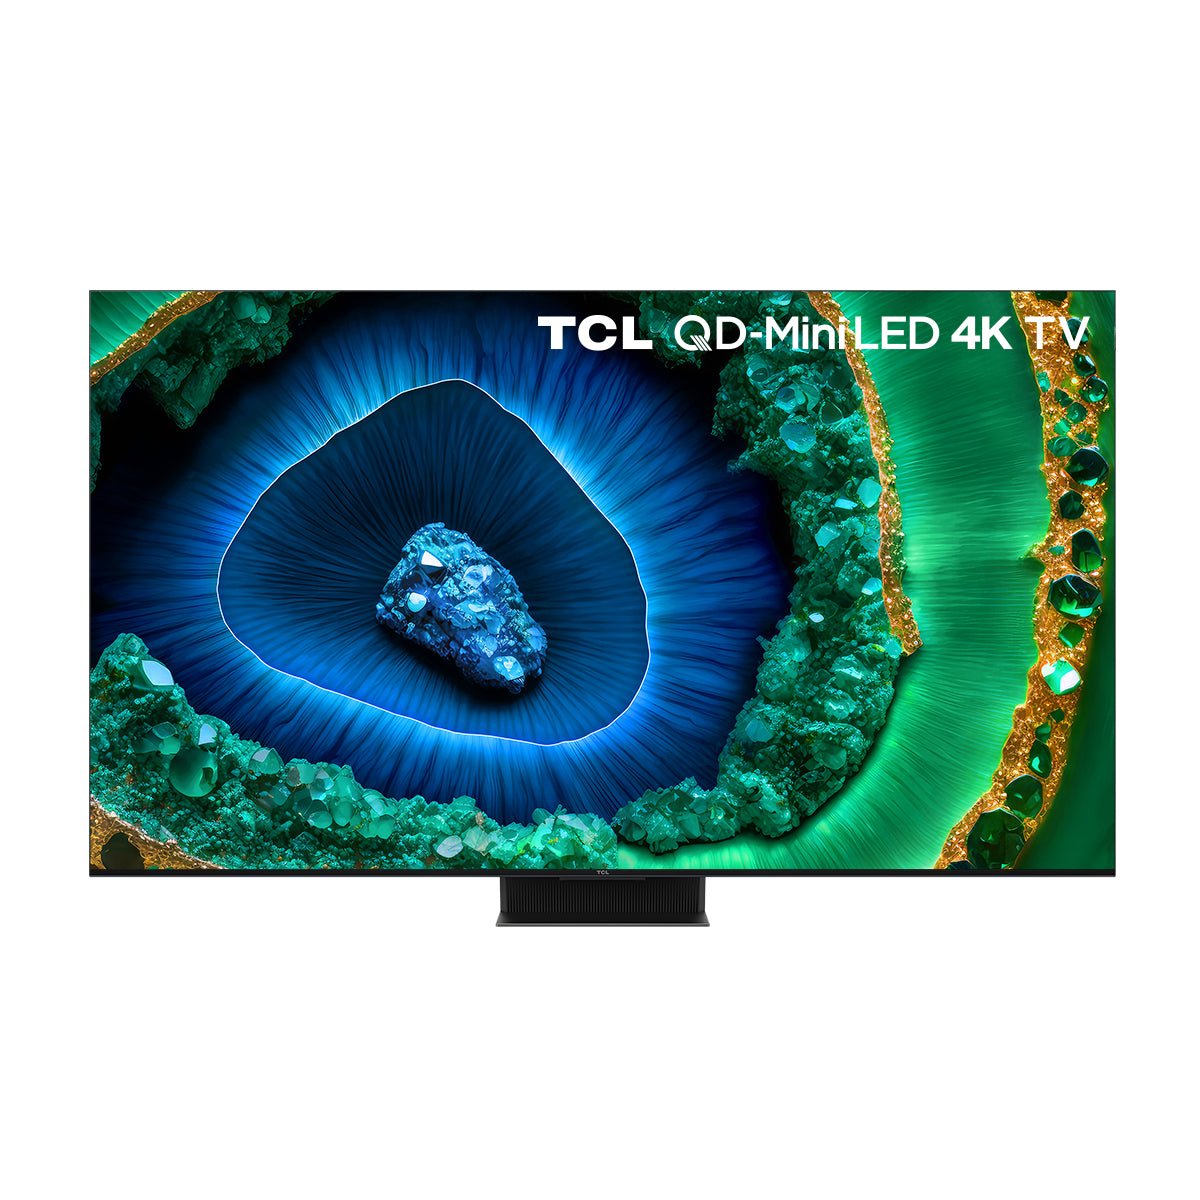 TCL C855 系列 QD - Mini LED 4K Google 智能電視 - Fever Electrics 電器熱網購平台